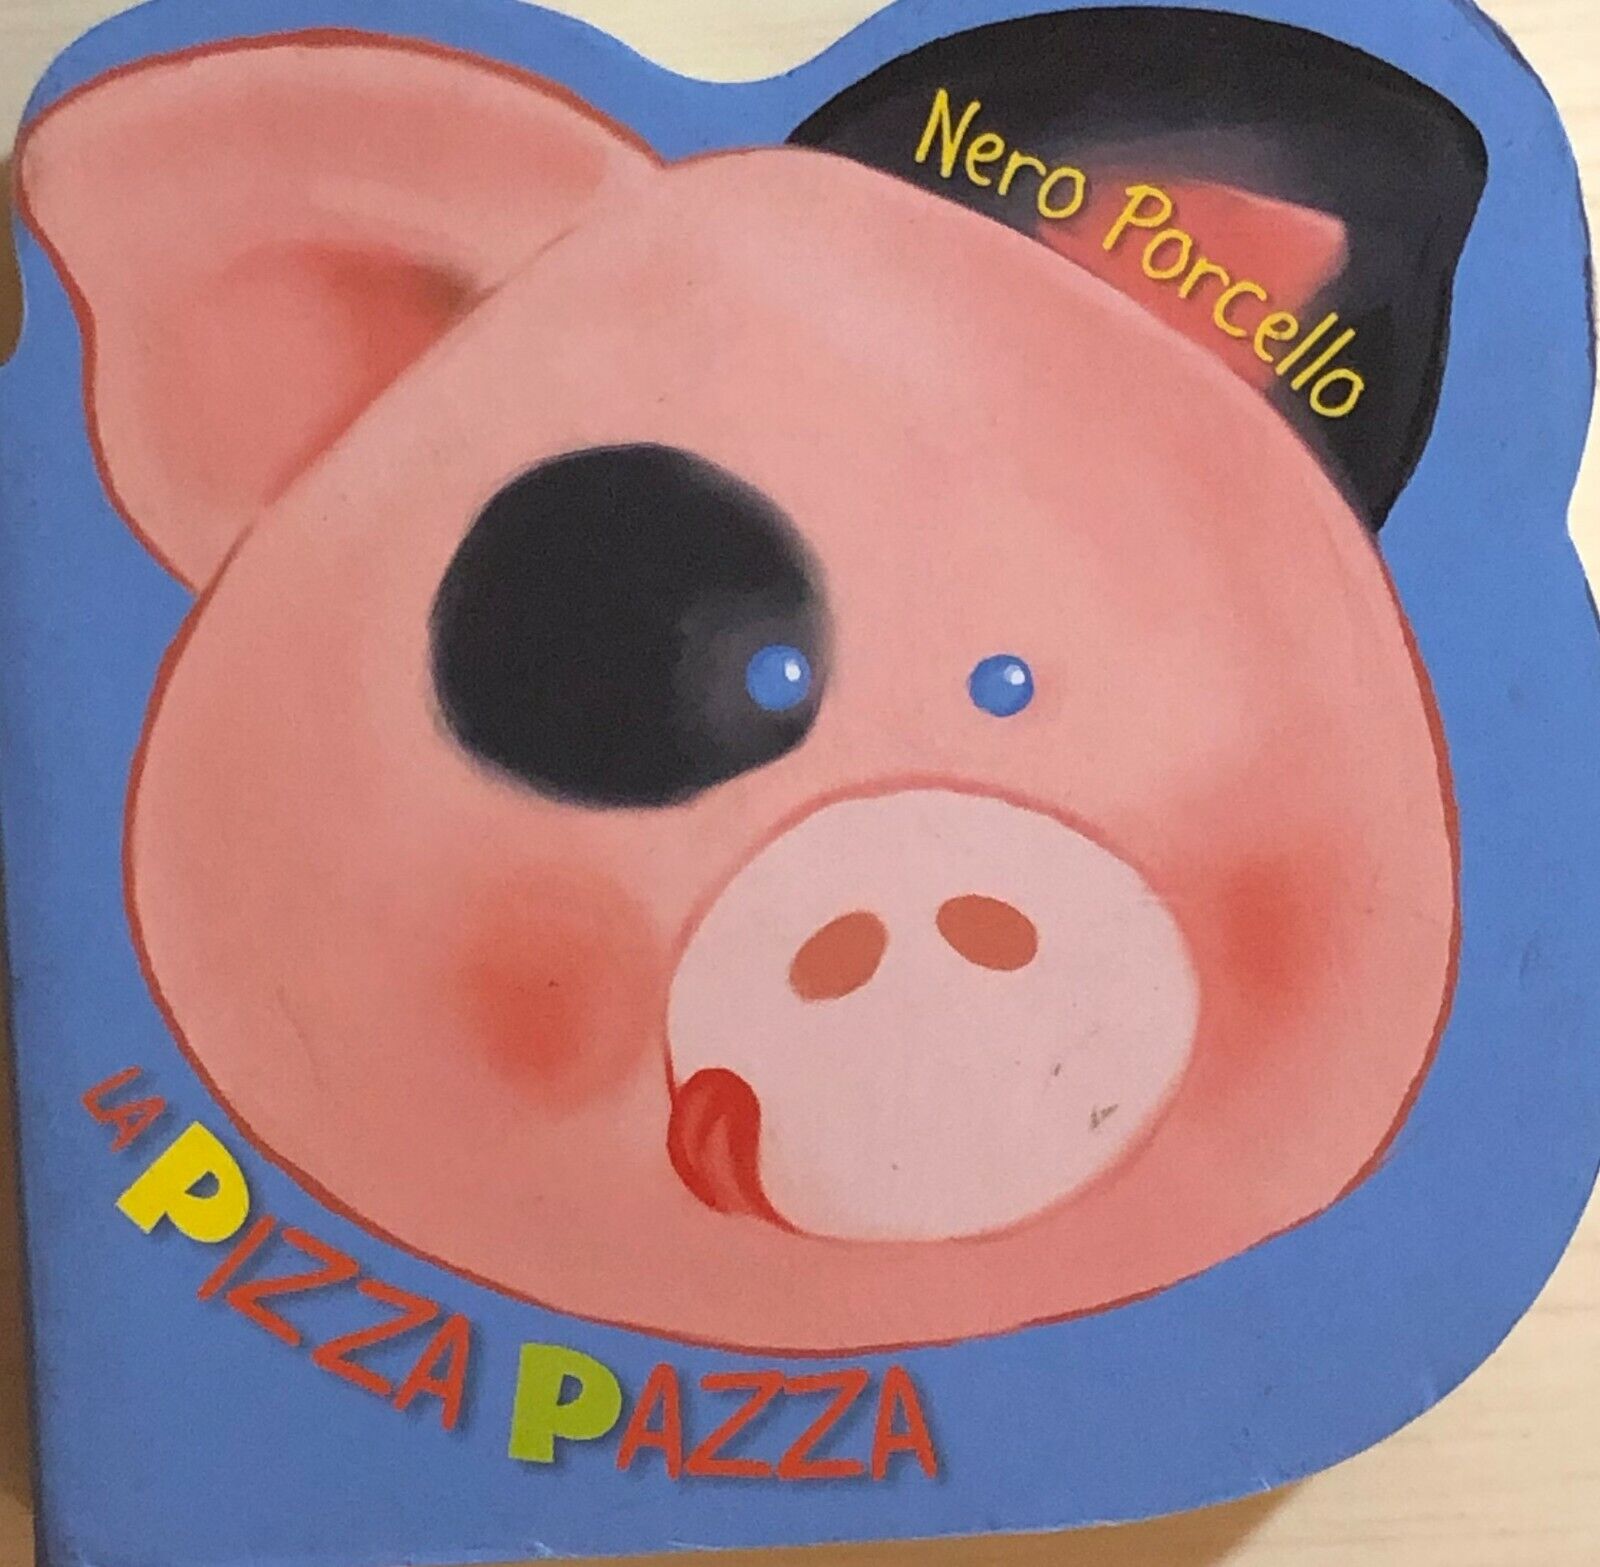 Nero porcello: la pizza pazzadi Aa.vv., 2009, Ape Libri libro usato